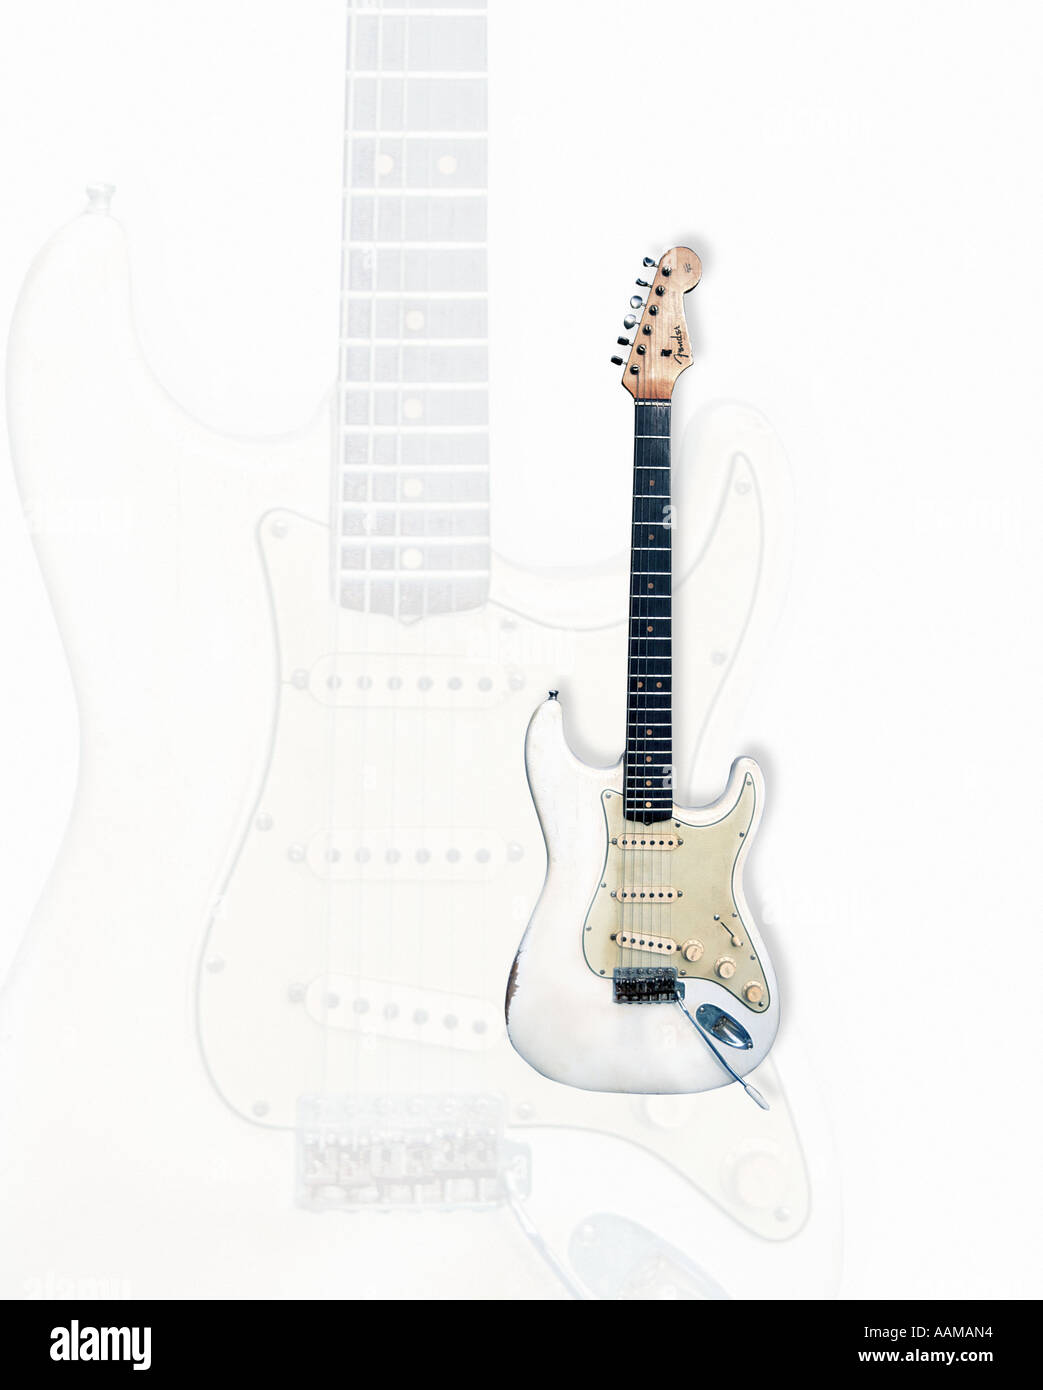 Guitare Fender Stratocaster blanche Photo Stock - Alamy